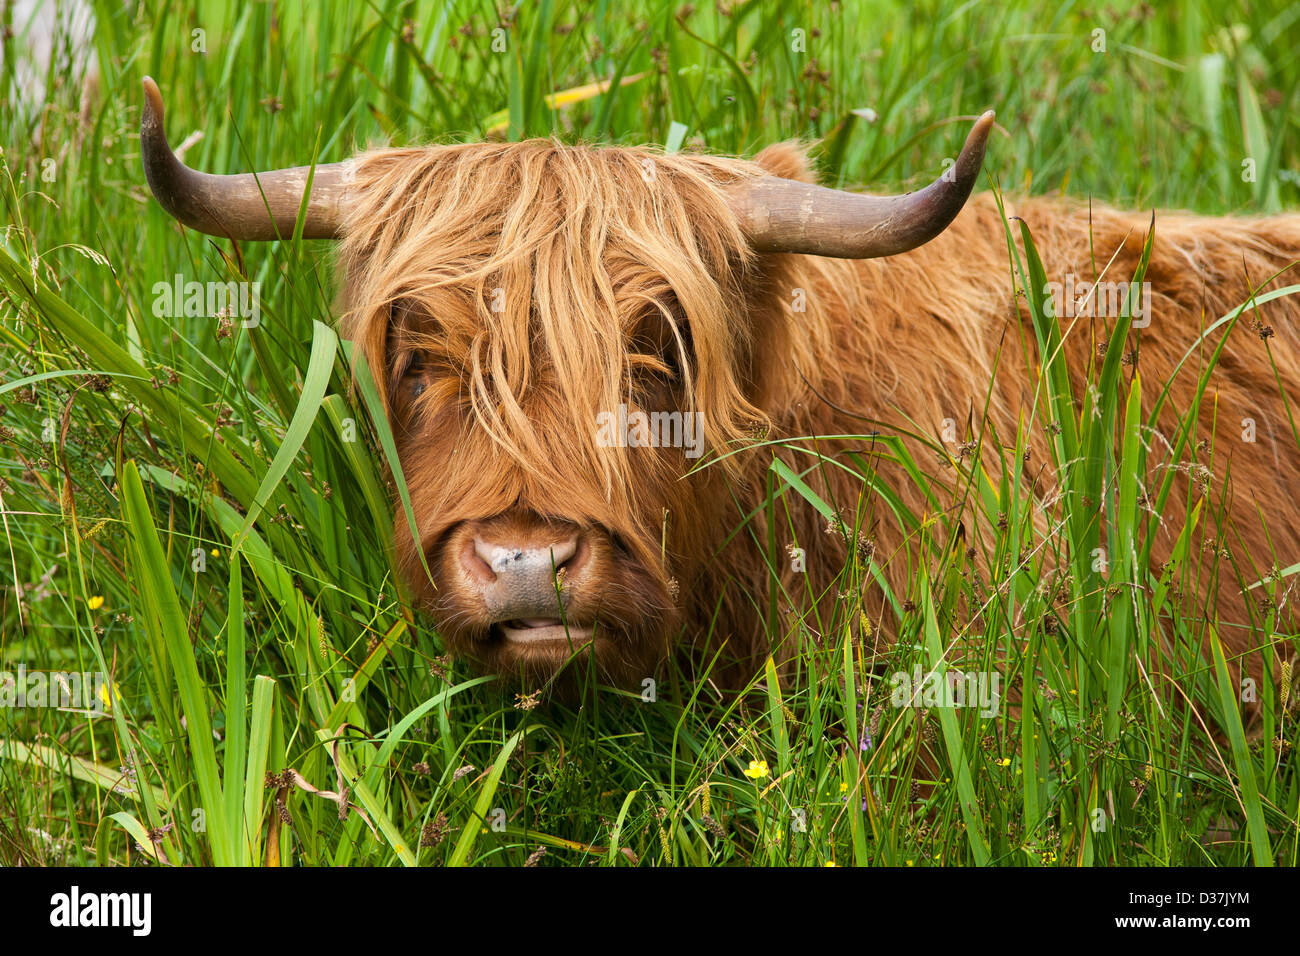 Le portrait d'une vache Highland cattle ou Kyloe ou dans un champ dans les Highlands écossais Banque D'Images